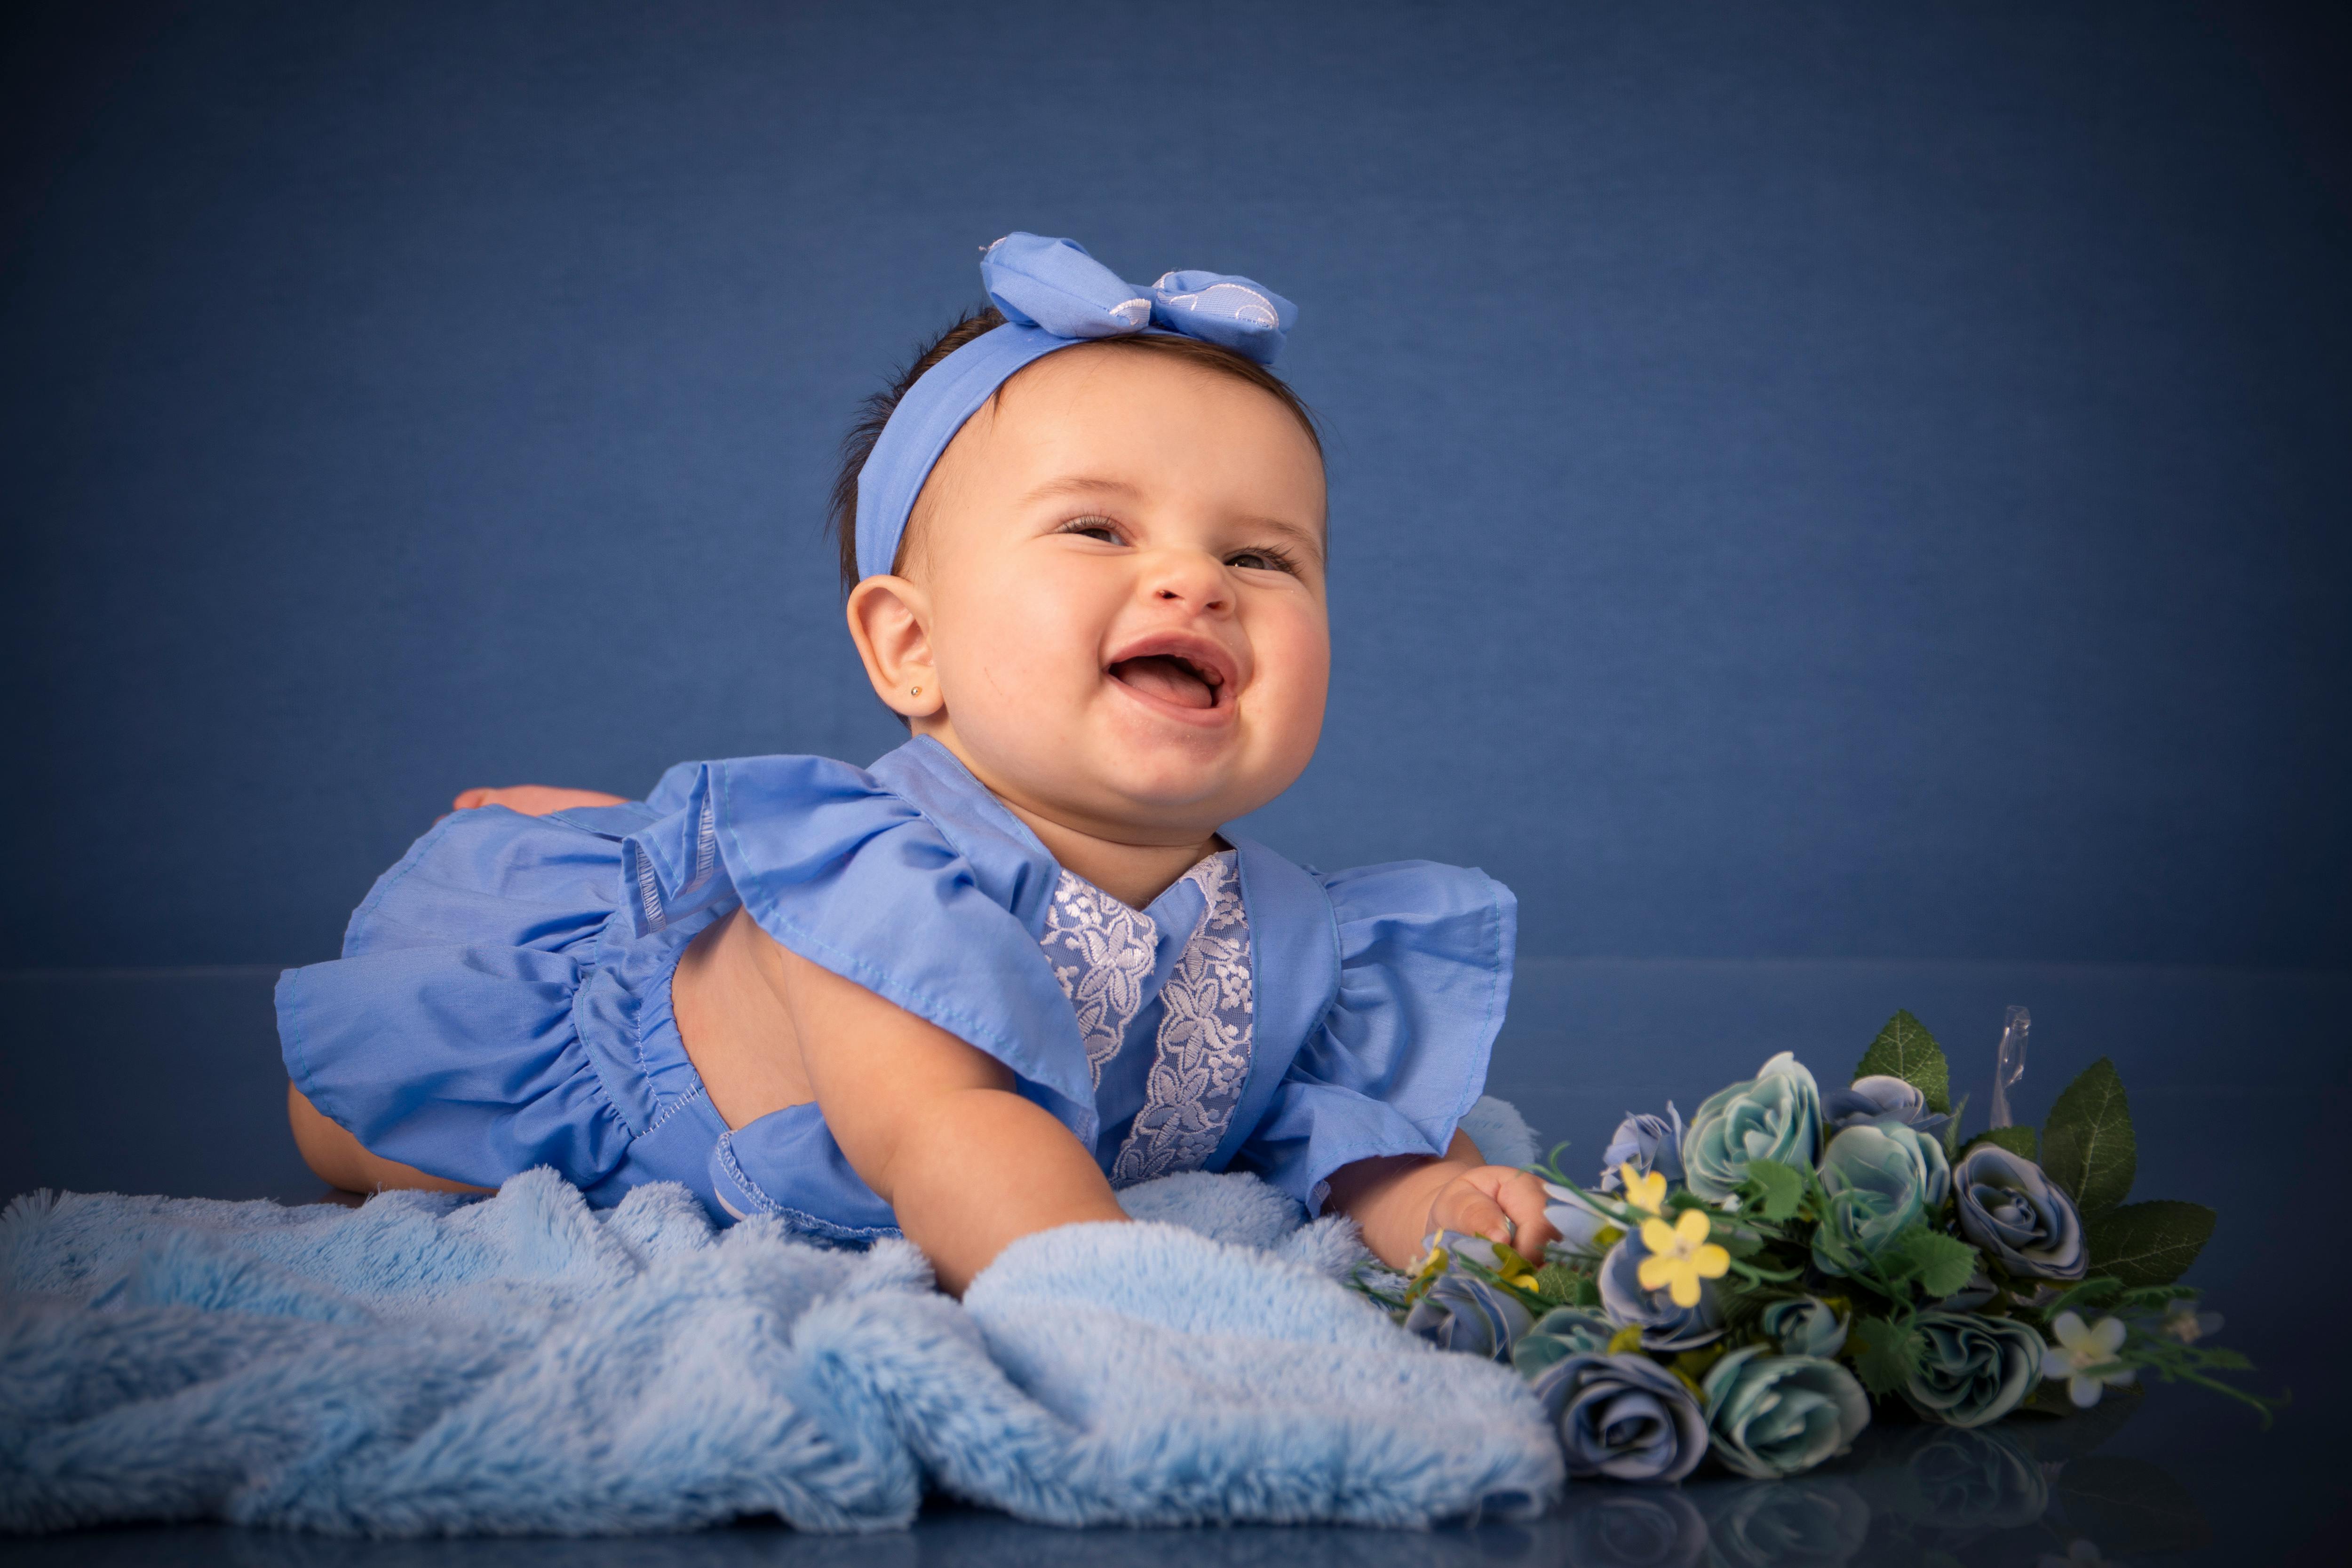 newborn baby girl studio images | Newborn baby photography, Newborn baby  photos, Baby photography poses